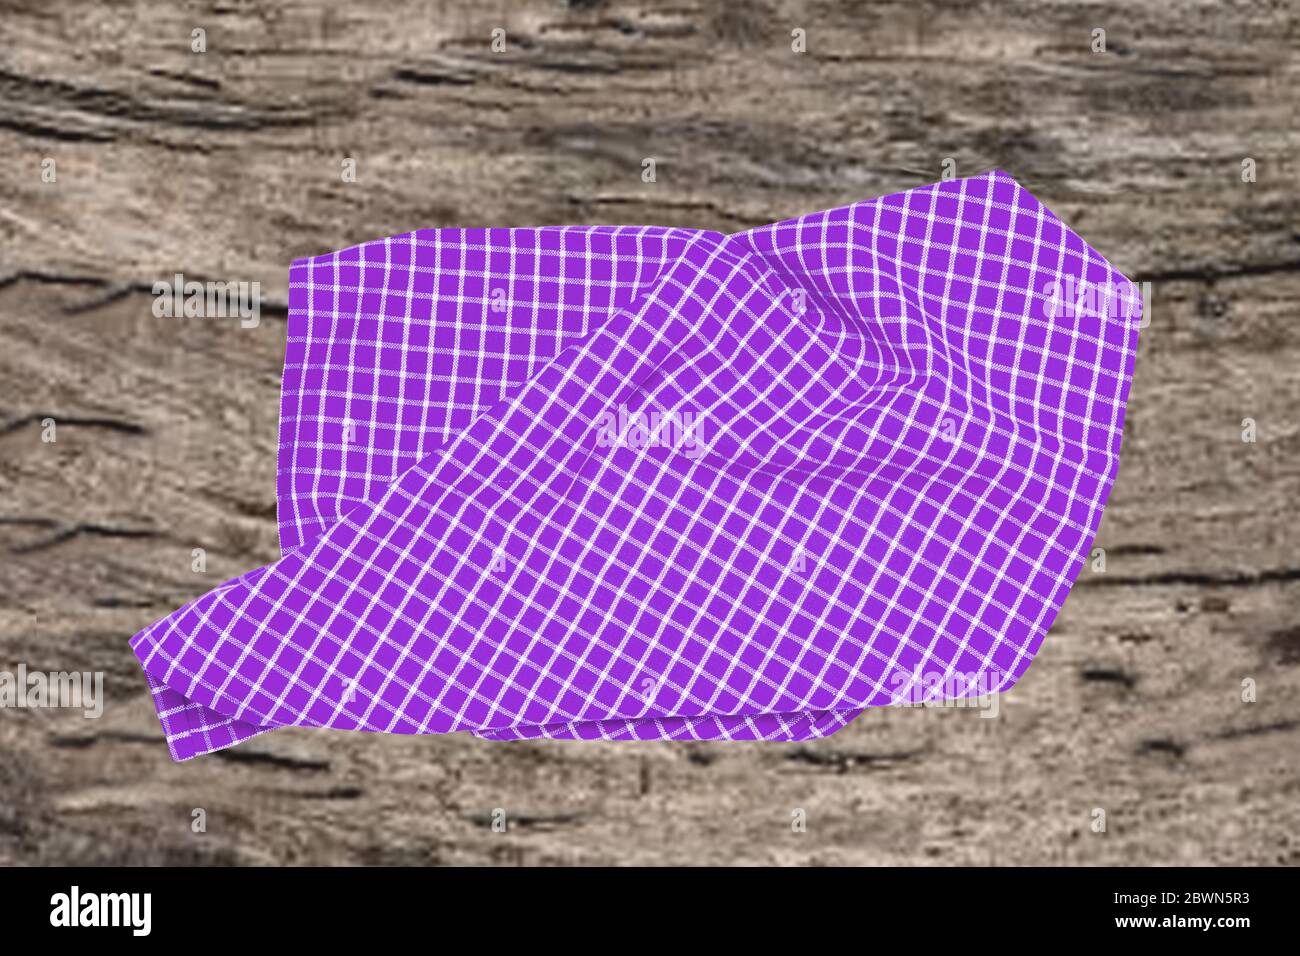 Topview aus leerem violett kariertem Küchentuch, Textil, Tischdecke oder Serviette auf einem verschwommenen rustikalen Holzhintergrund. Vorlage für Lebensmittel und Produkt di Stockfoto